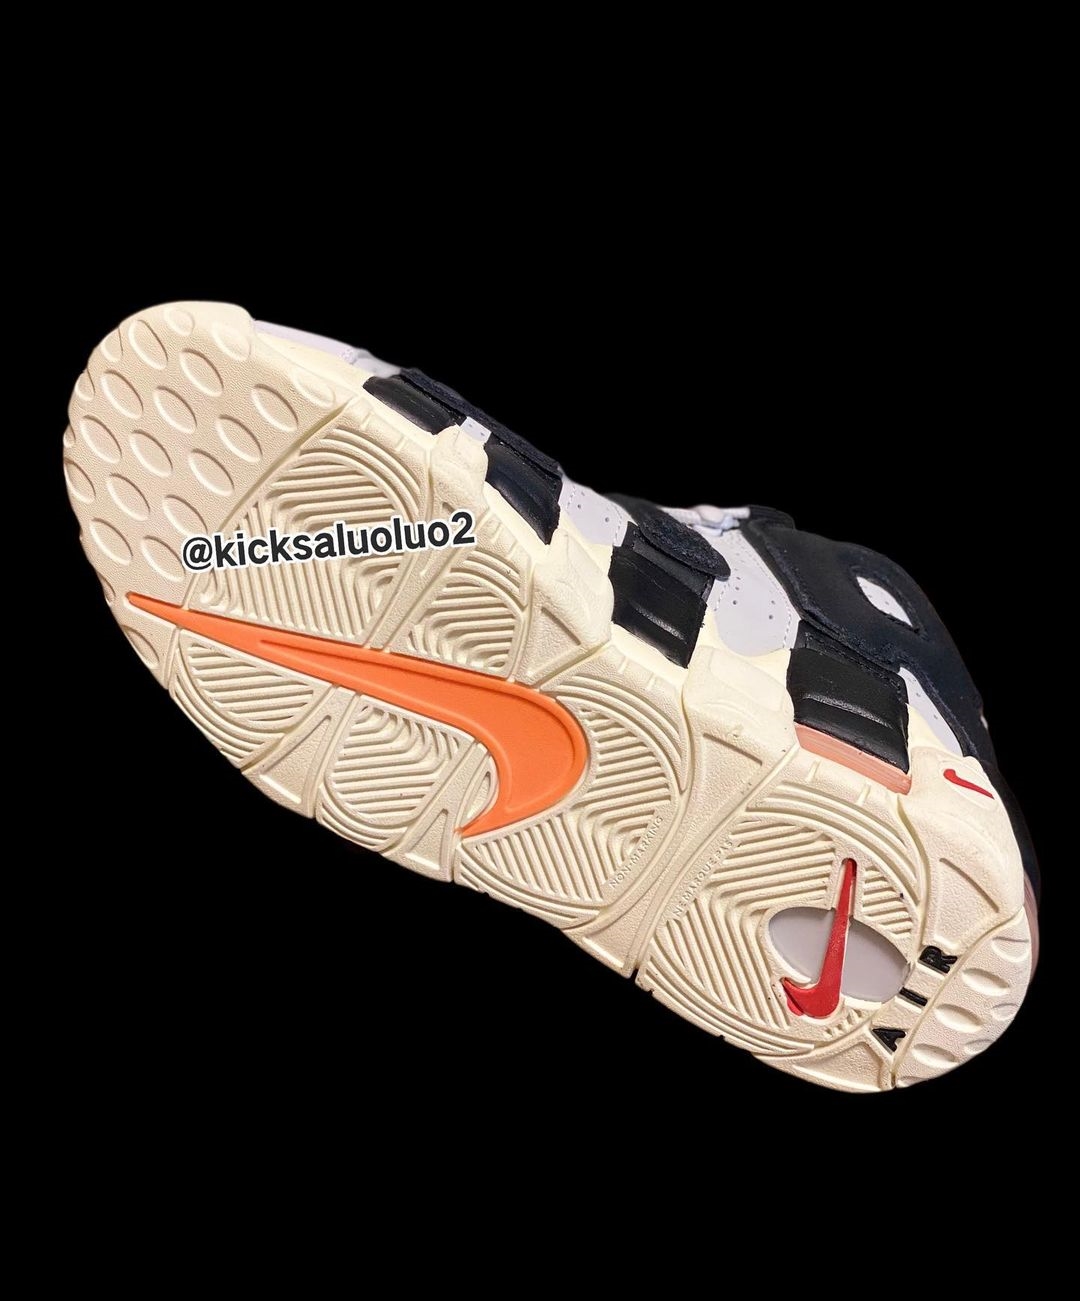 2022年 秋 発売予定！ナイキ GS エア モア アップテンポ “ナイキフープス/ホワイト/ブラック” (NIKE GS AIR MORE UPTEMPO “Nike Hoops/White/Black”) [DX3360-001]